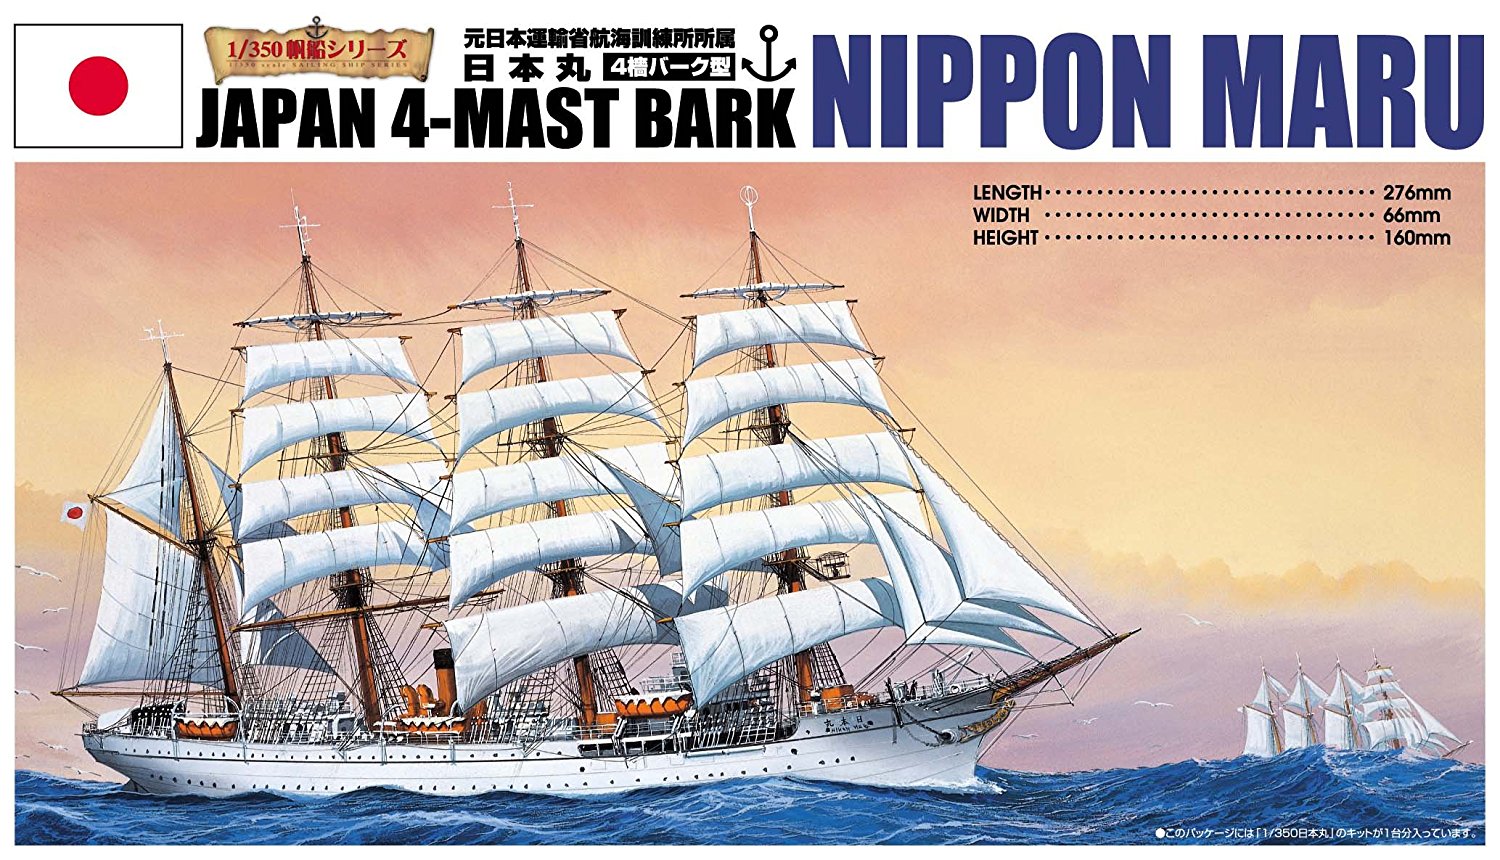 Nipponmaru